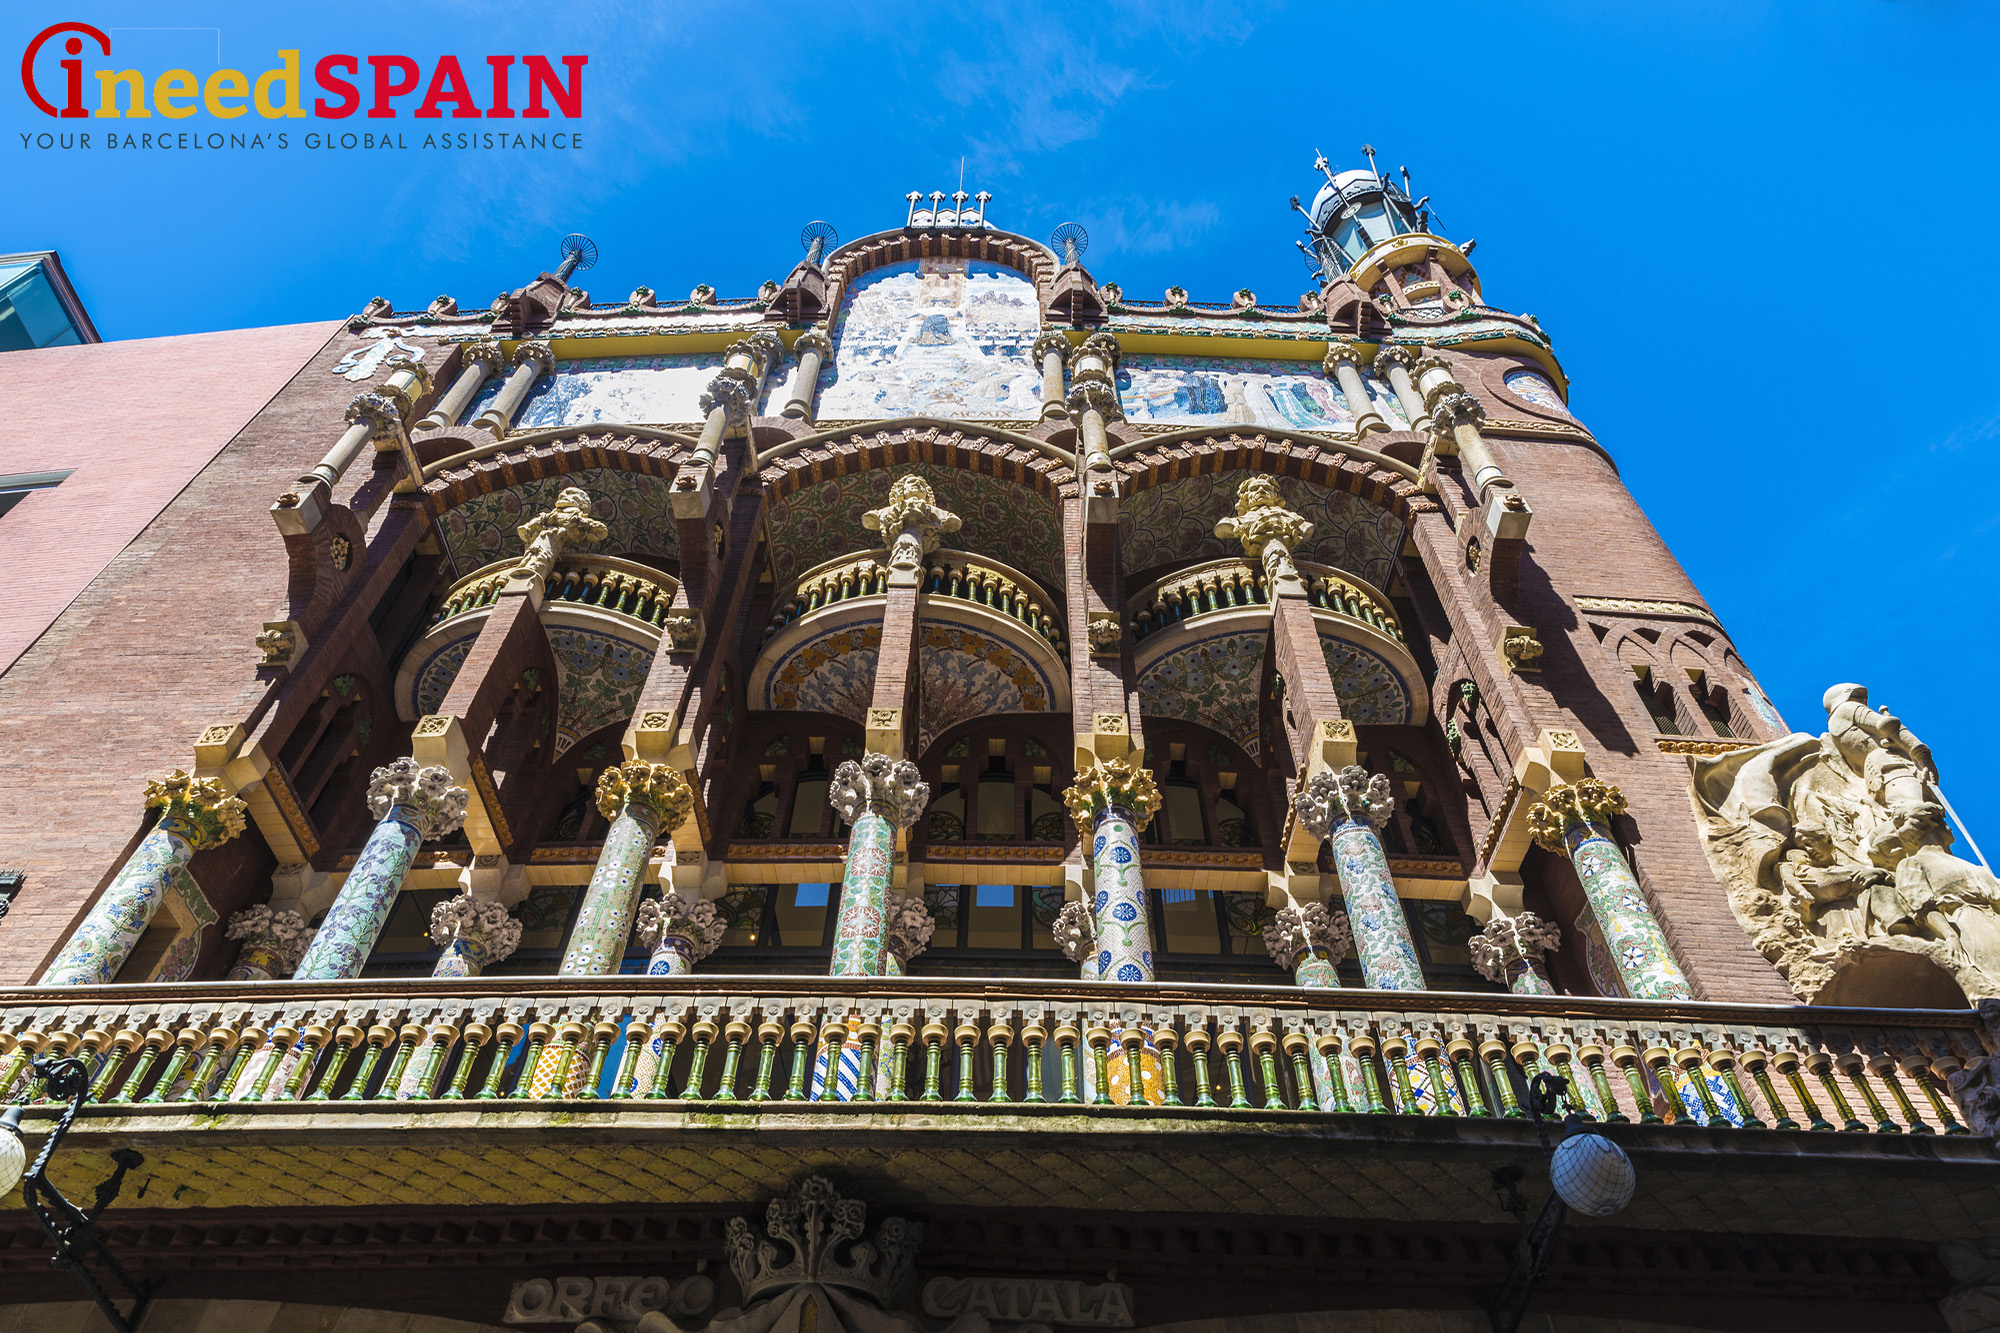 Дворец каталонской музыки. I Need Spain - все о жизни в Испании